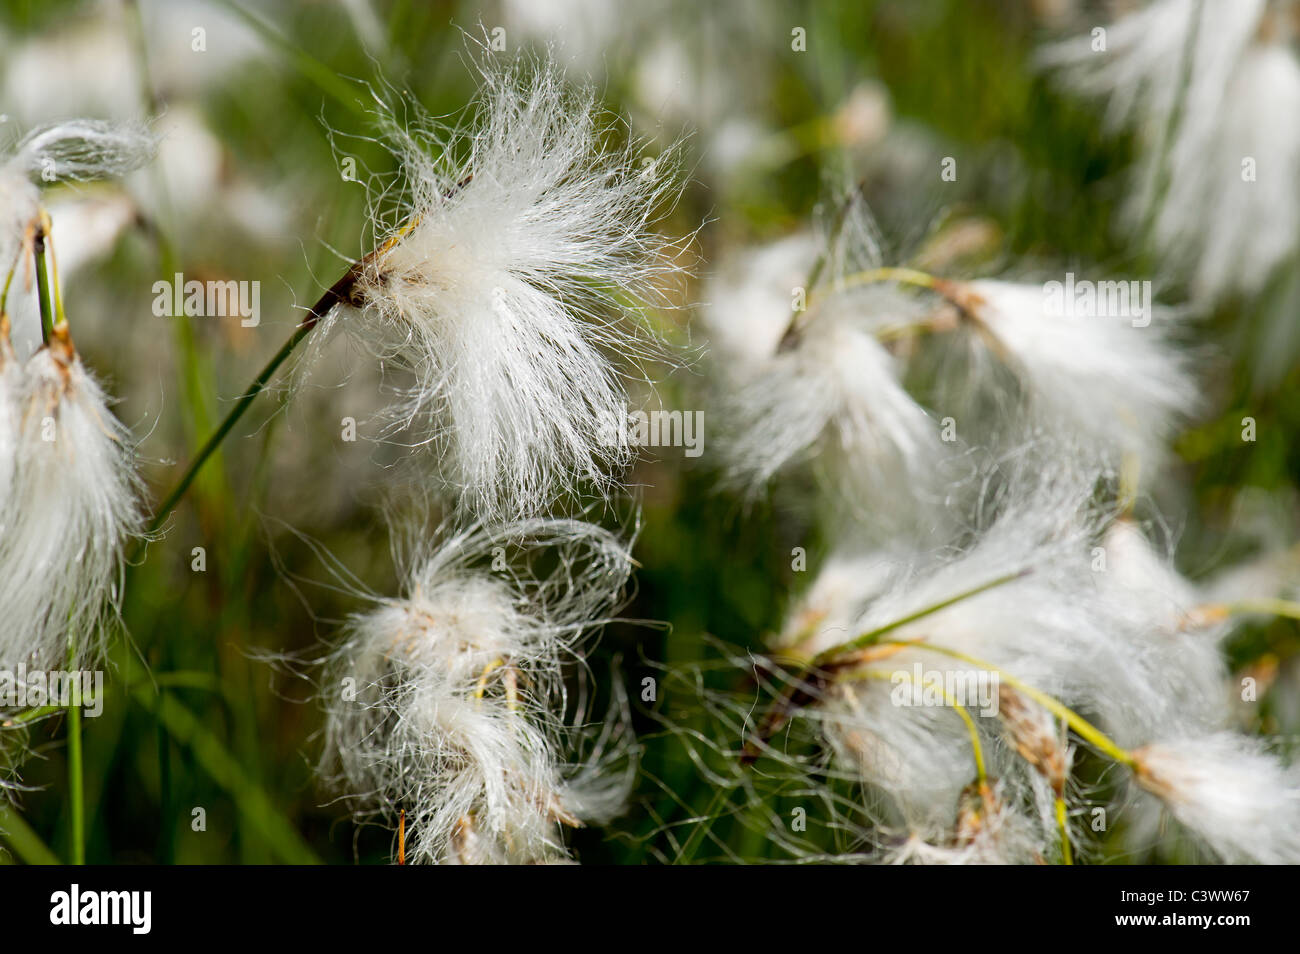 Hierba de algodón cottongrass CYPERACEAE Eriophorum angustifolium honck jardinería jardín de nieve bola de nieve blanca flor floración s Foto de stock